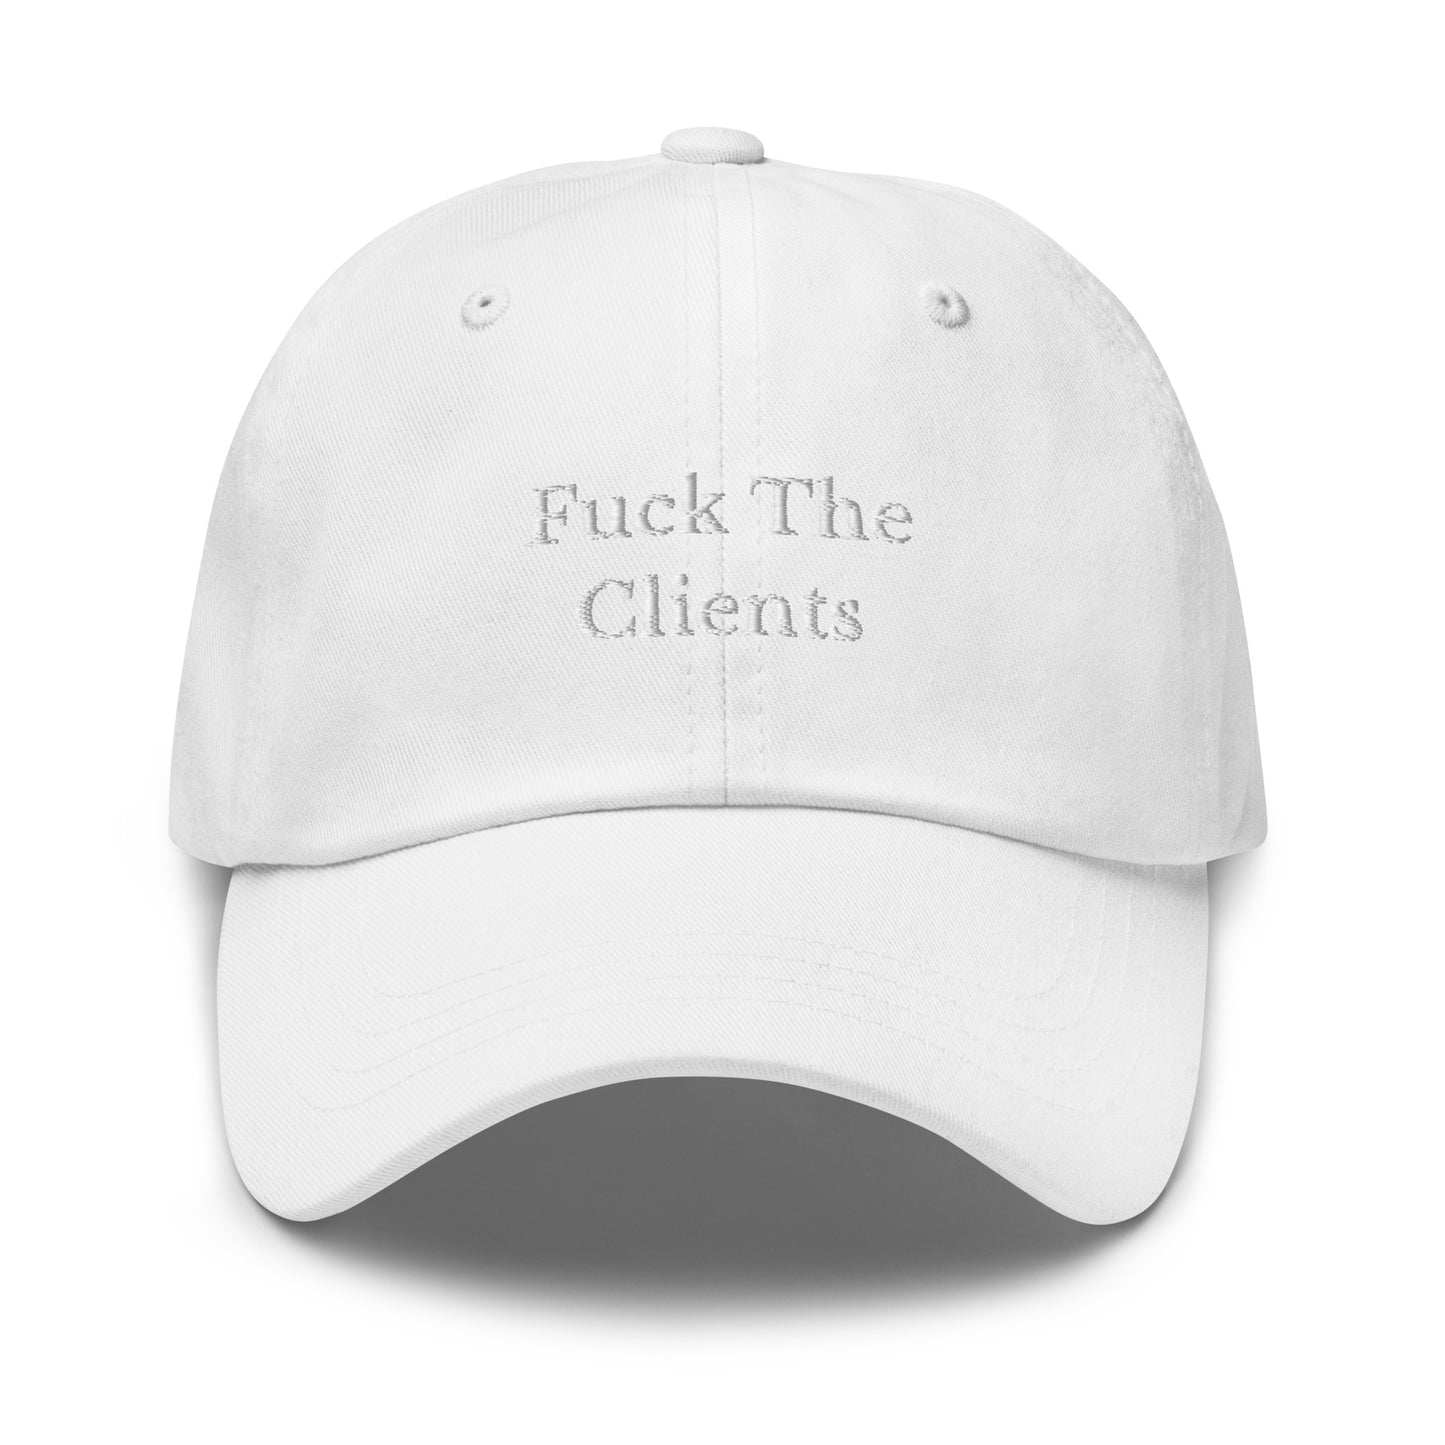 Fuck The Clients Cap